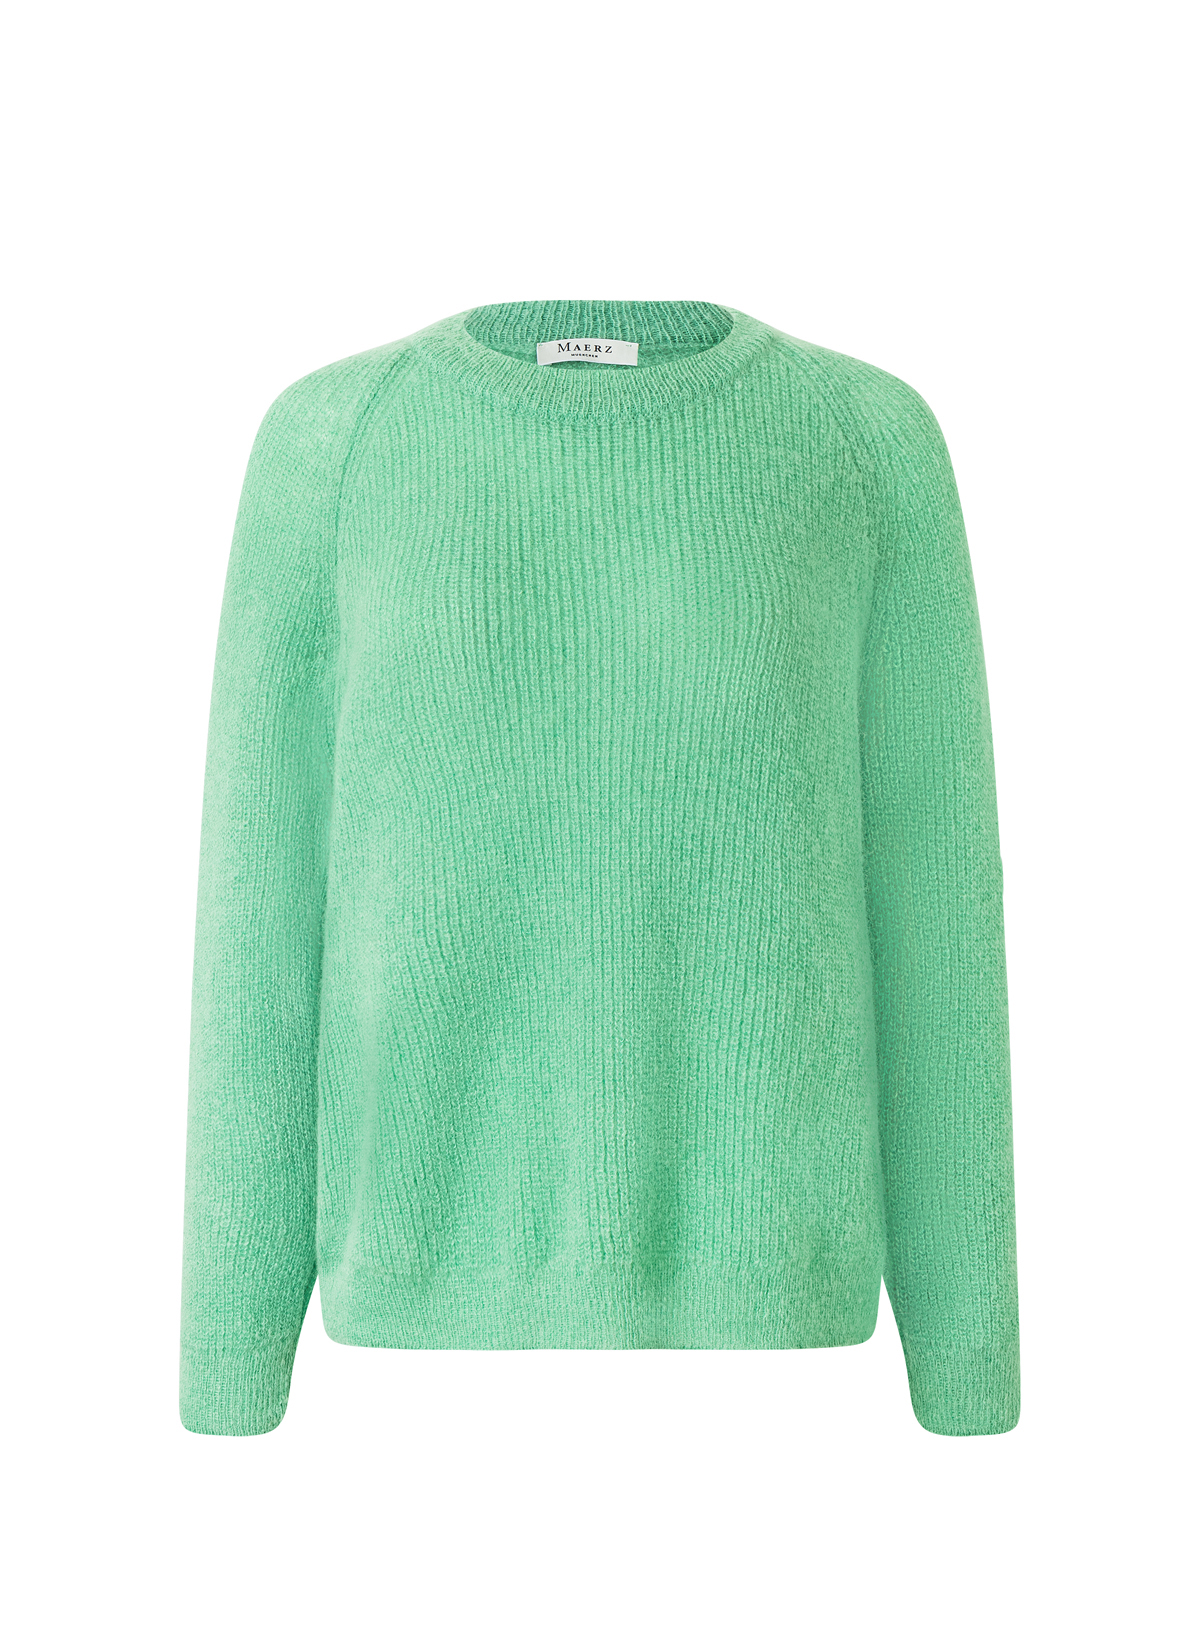 Пуловер März Rundhals, цвет Green mint цена и фото